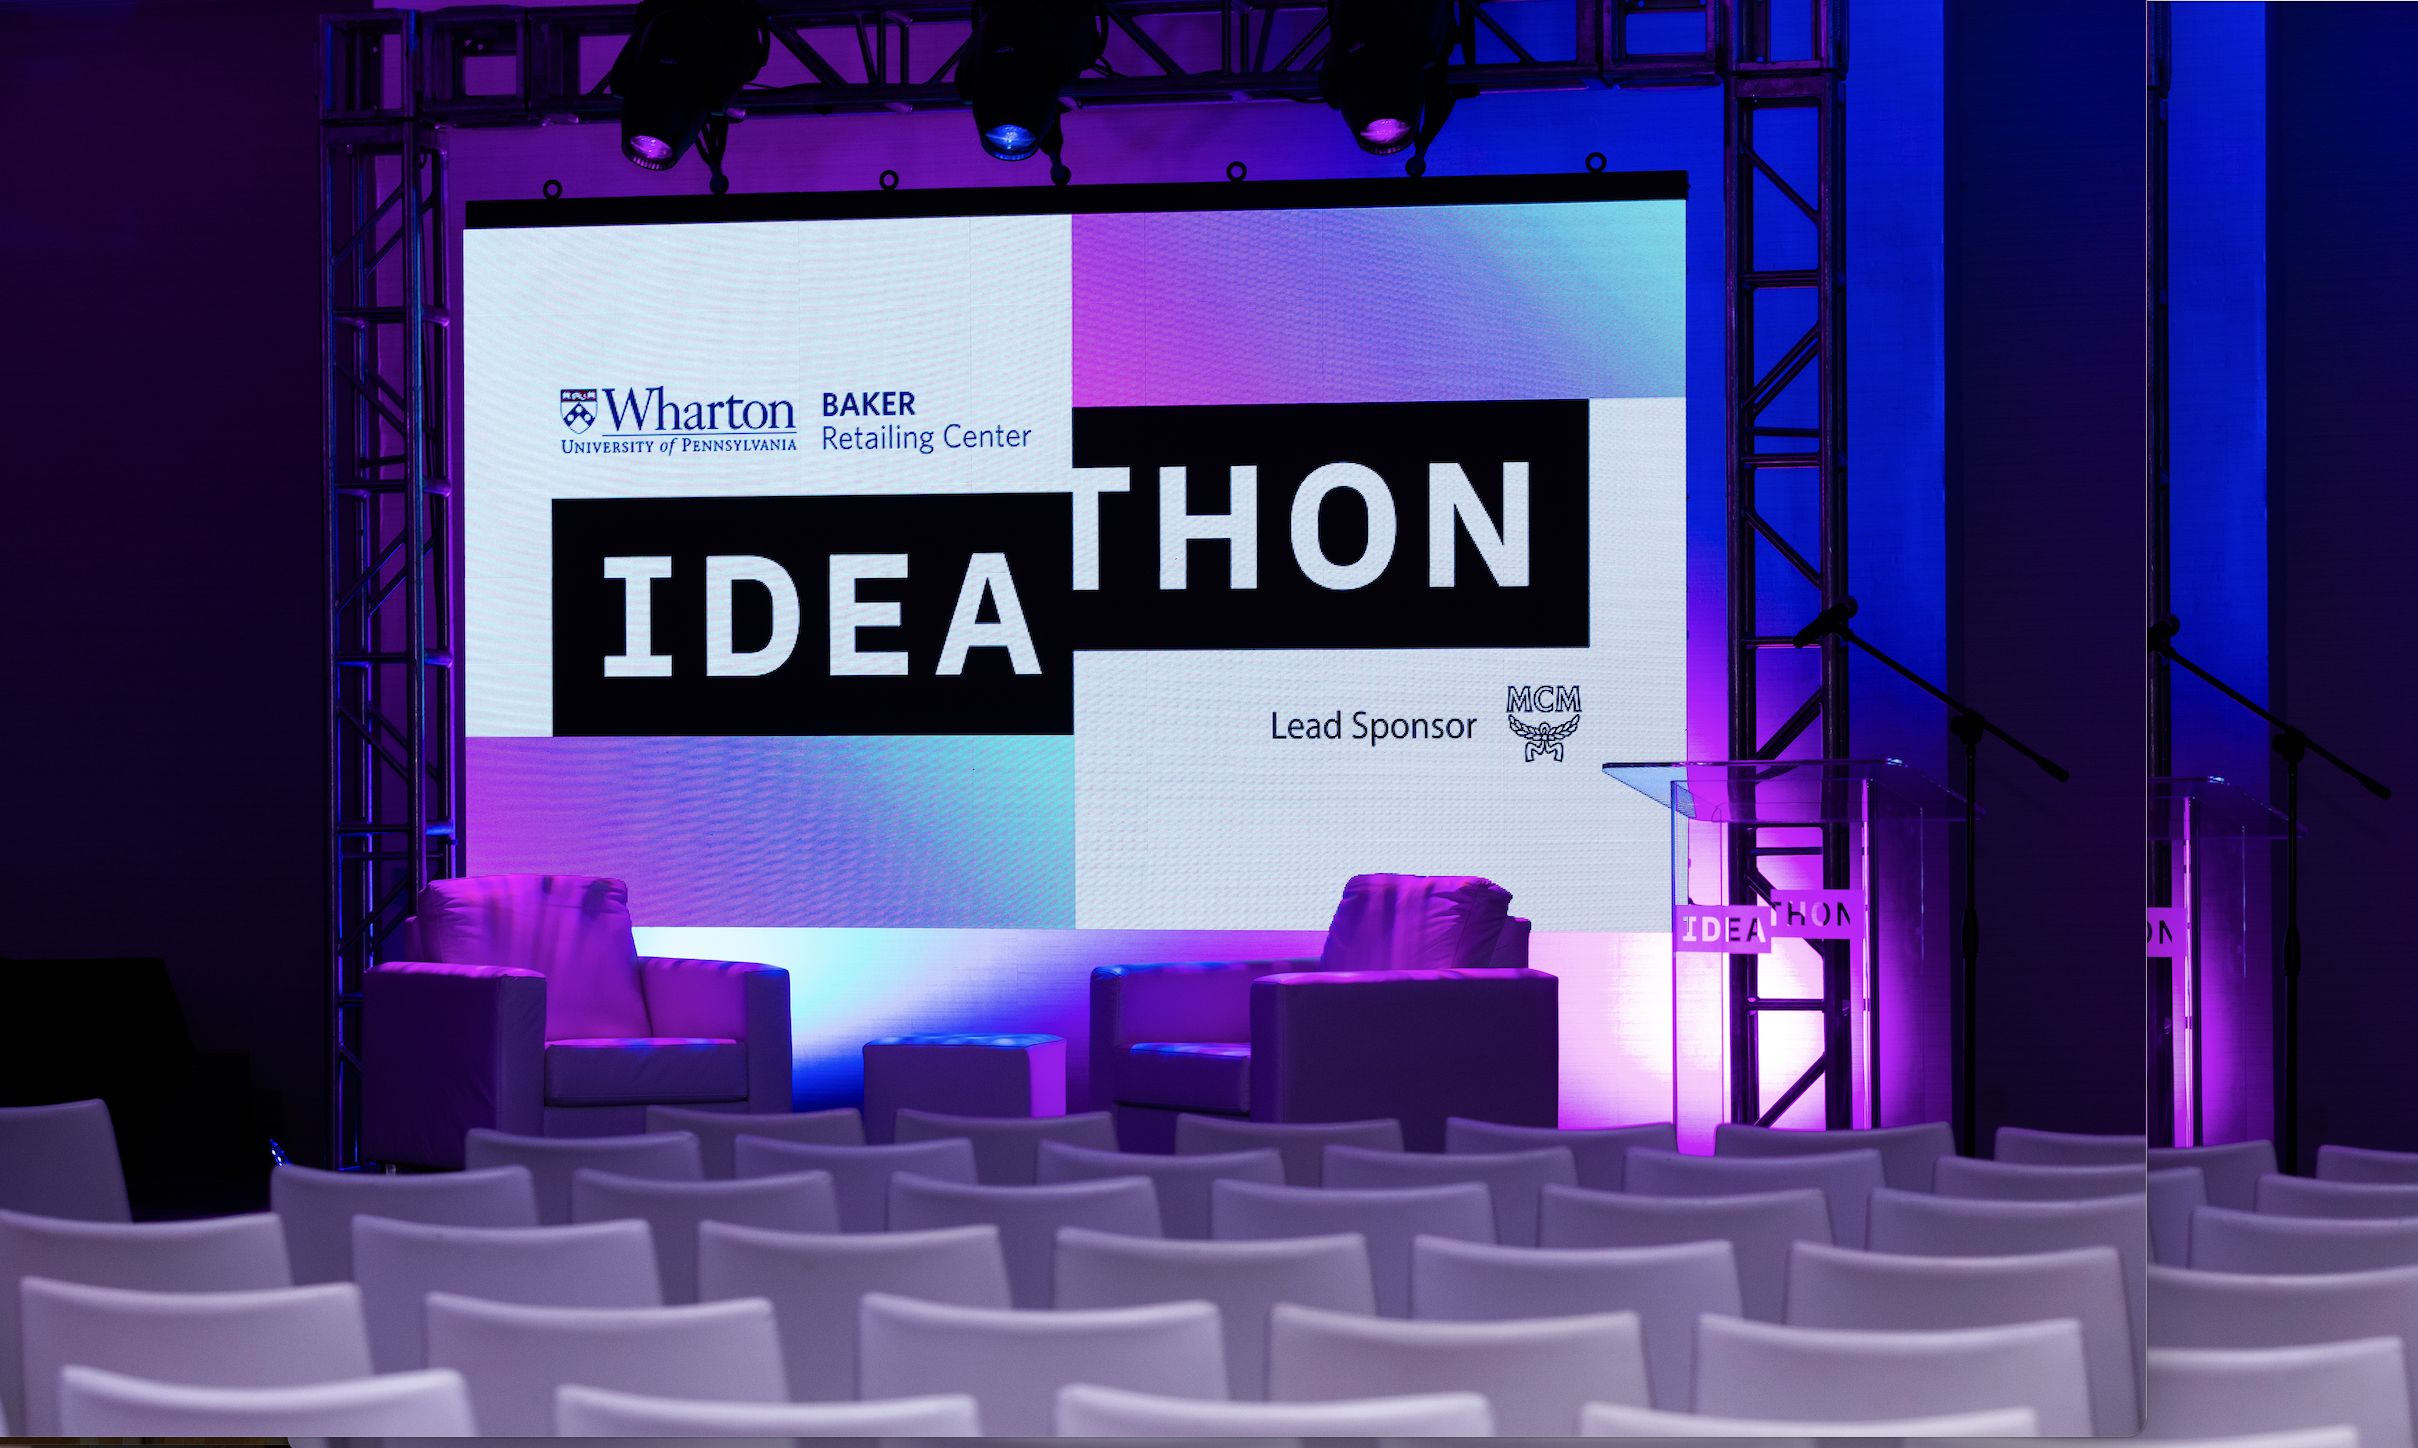 Ideathon 2022